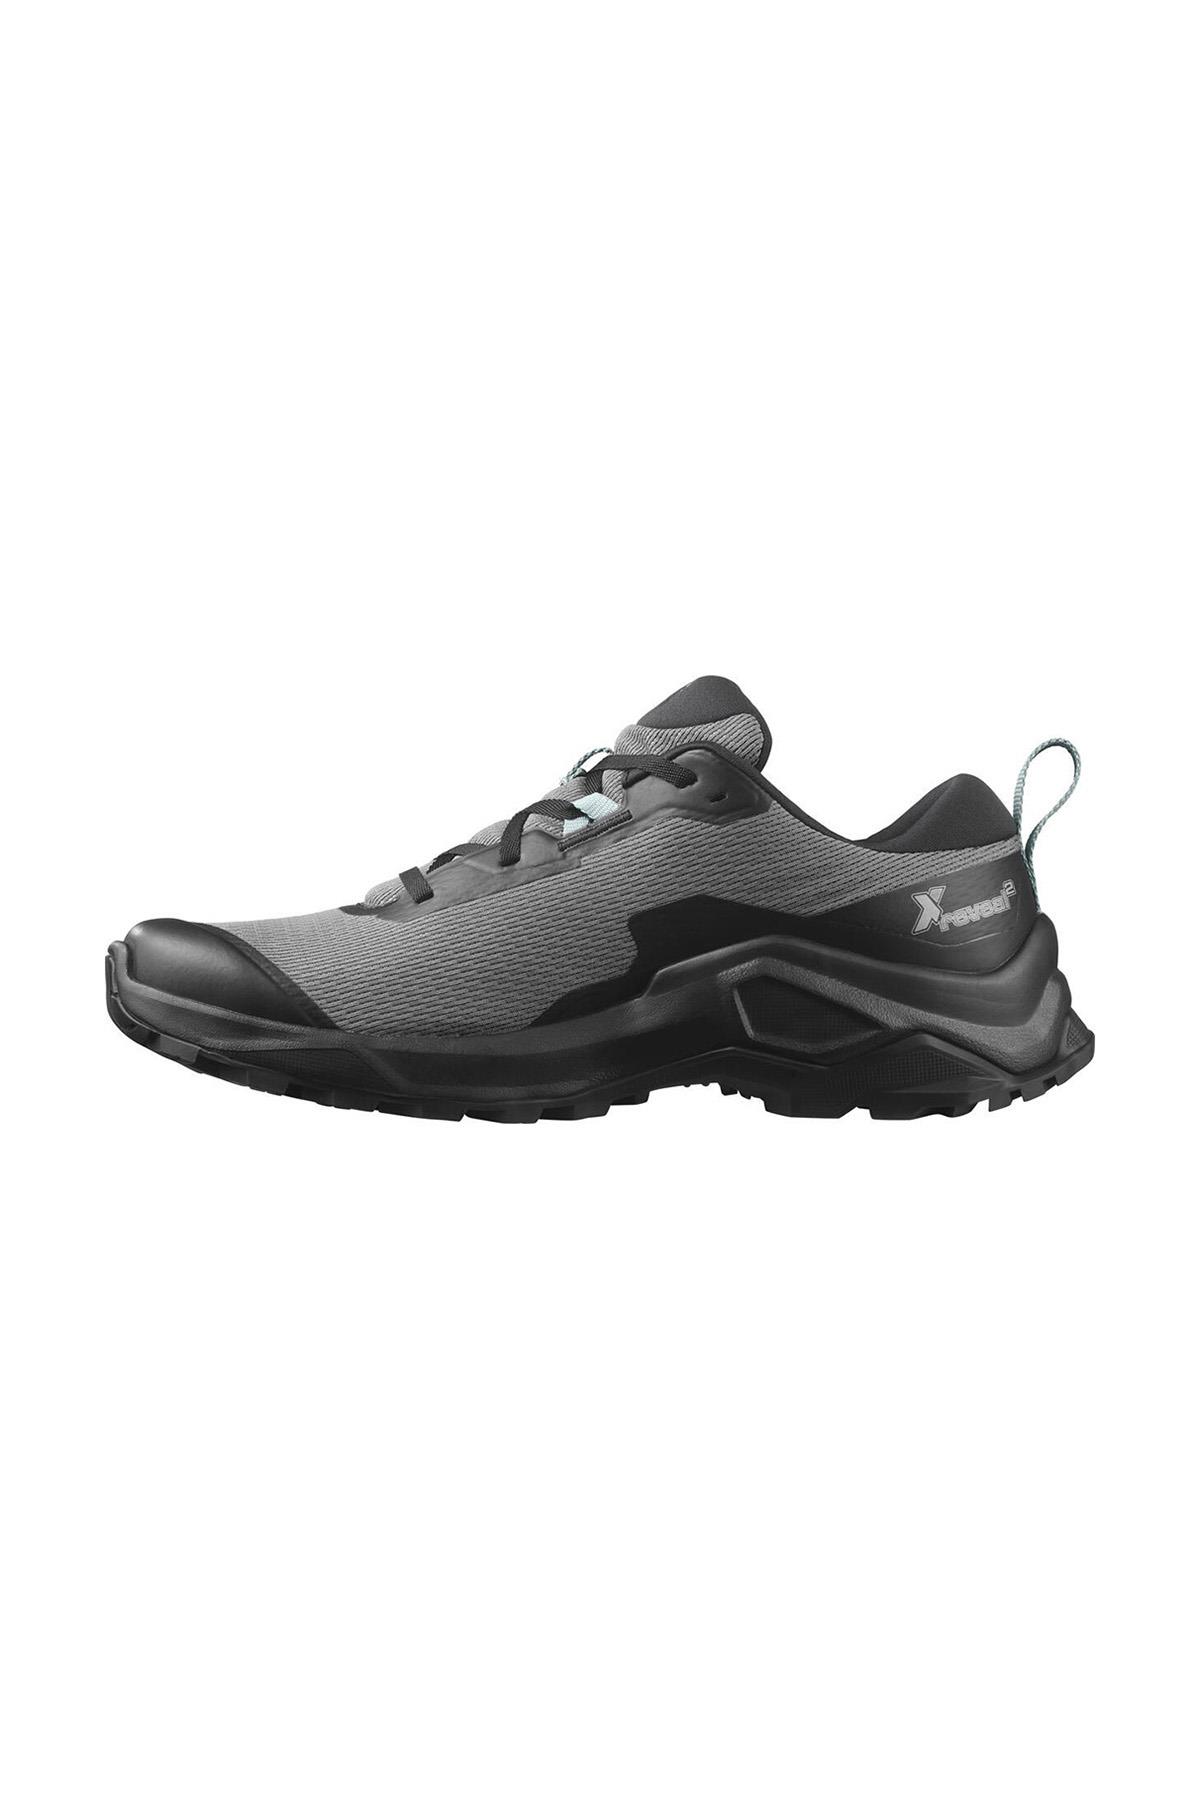  Salomon X REVEAL 2 Erkek Ayakkabısı L41604300